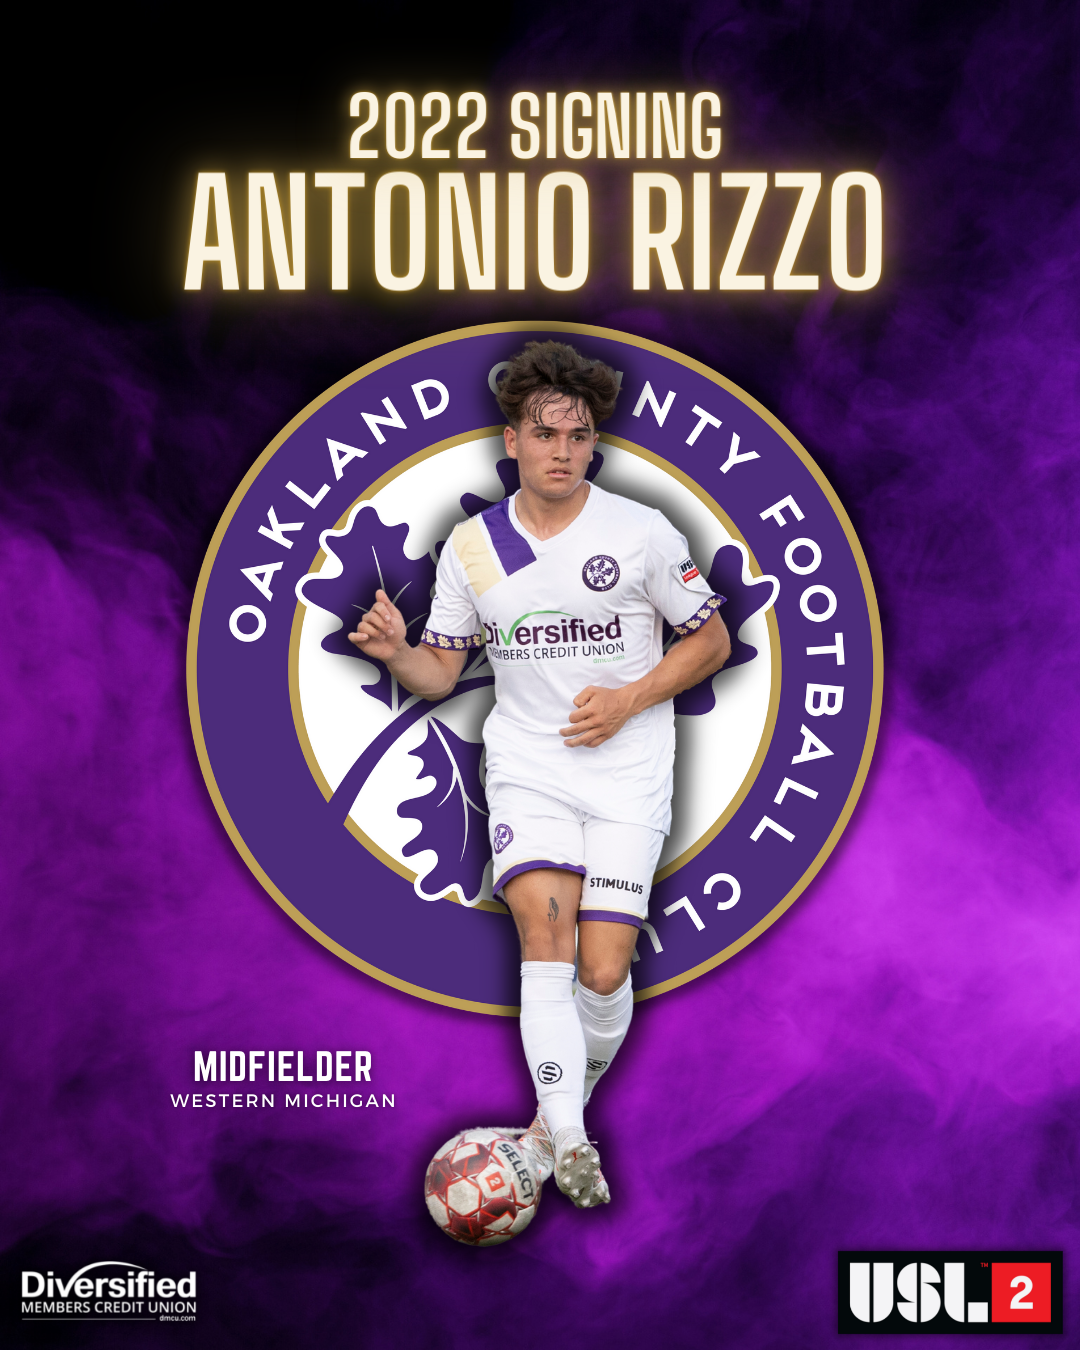 Antonio Rizzo